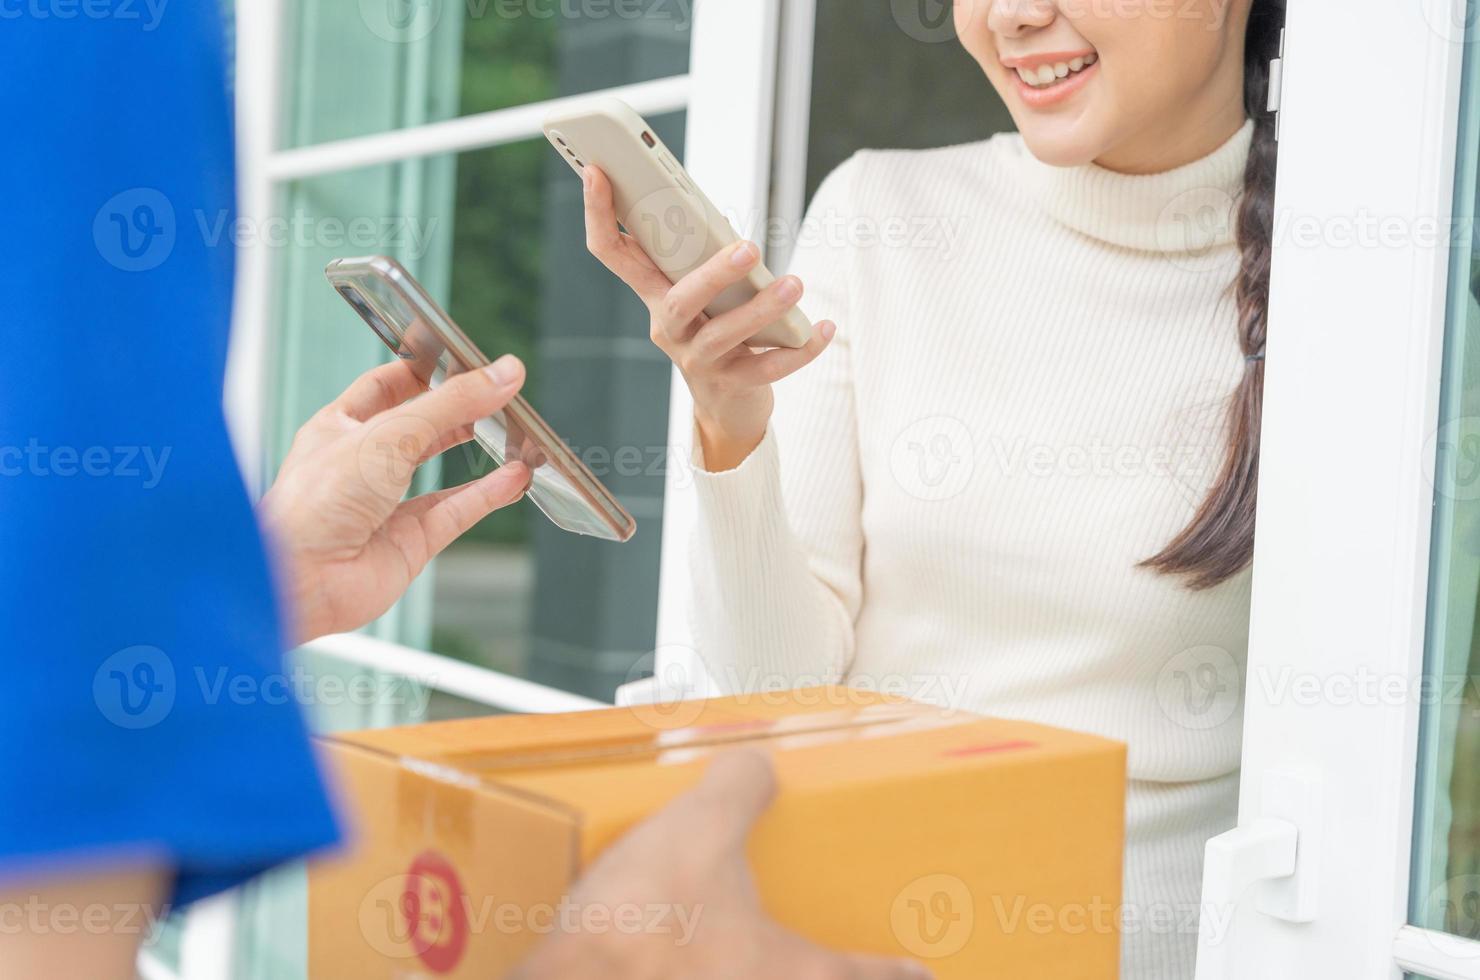 sourire heureux femme asiatique scanner le code qr pour payer de la nourriture. livreur envoyer livrer express. boutique en ligne, conteneur en papier, plats à emporter, facteur, service de livraison, colis, monnaie électronique, transfert numérique photo